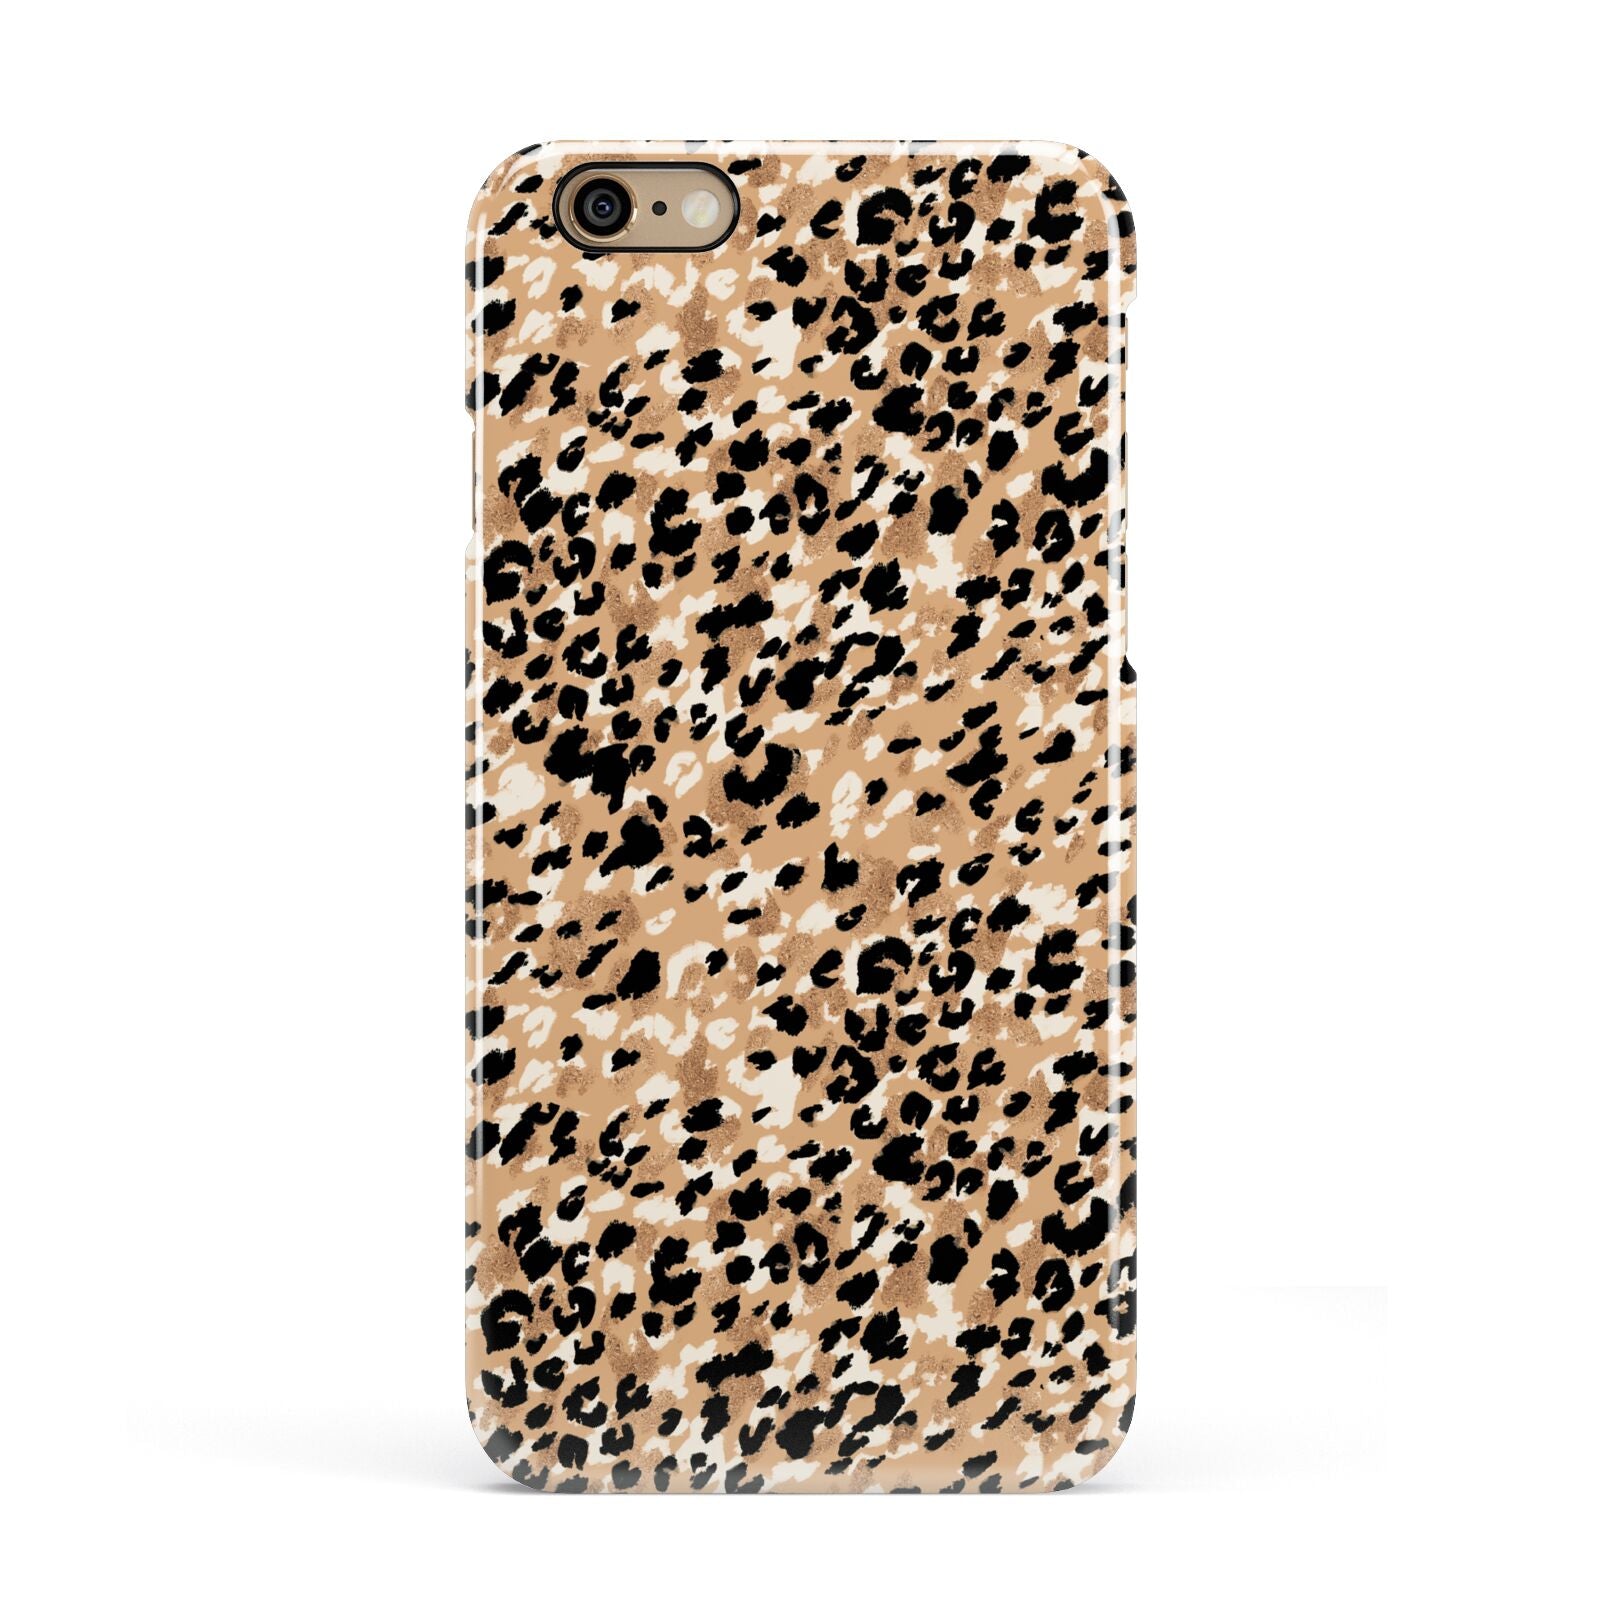 Leopard Print Apple iPhone 6 3D Snap Case